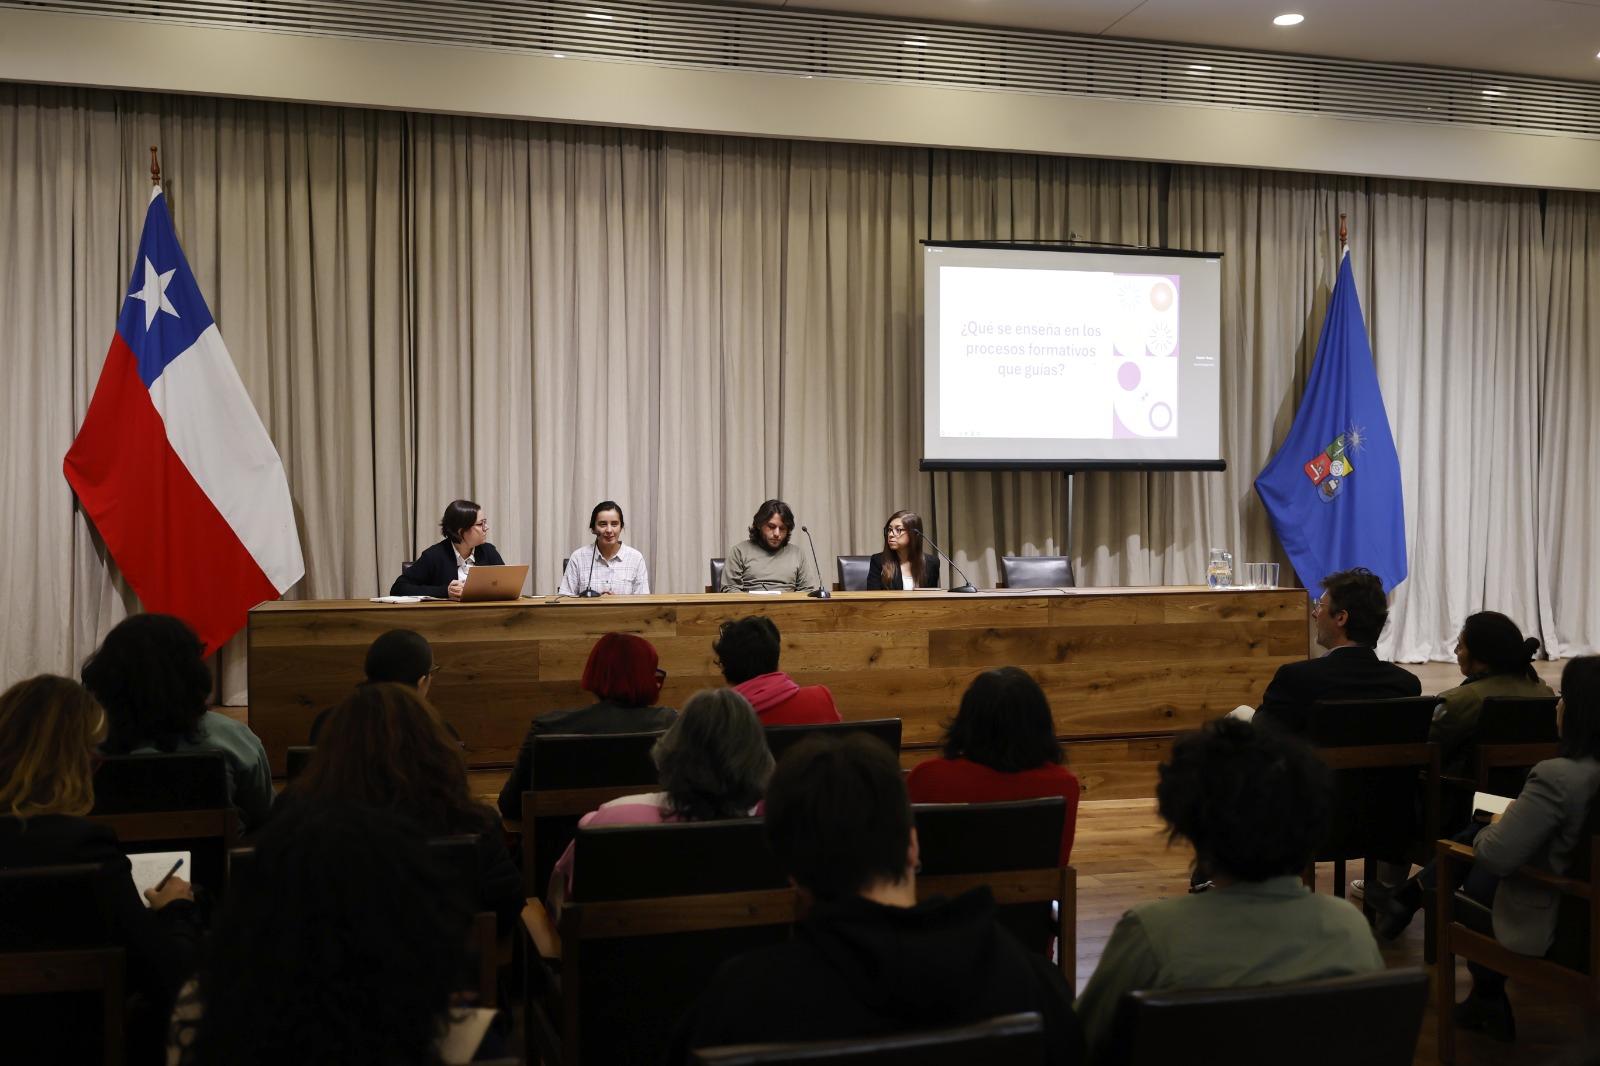 Igualdad de género: avances y desafíos para una formación de calidad en la U. de Chile